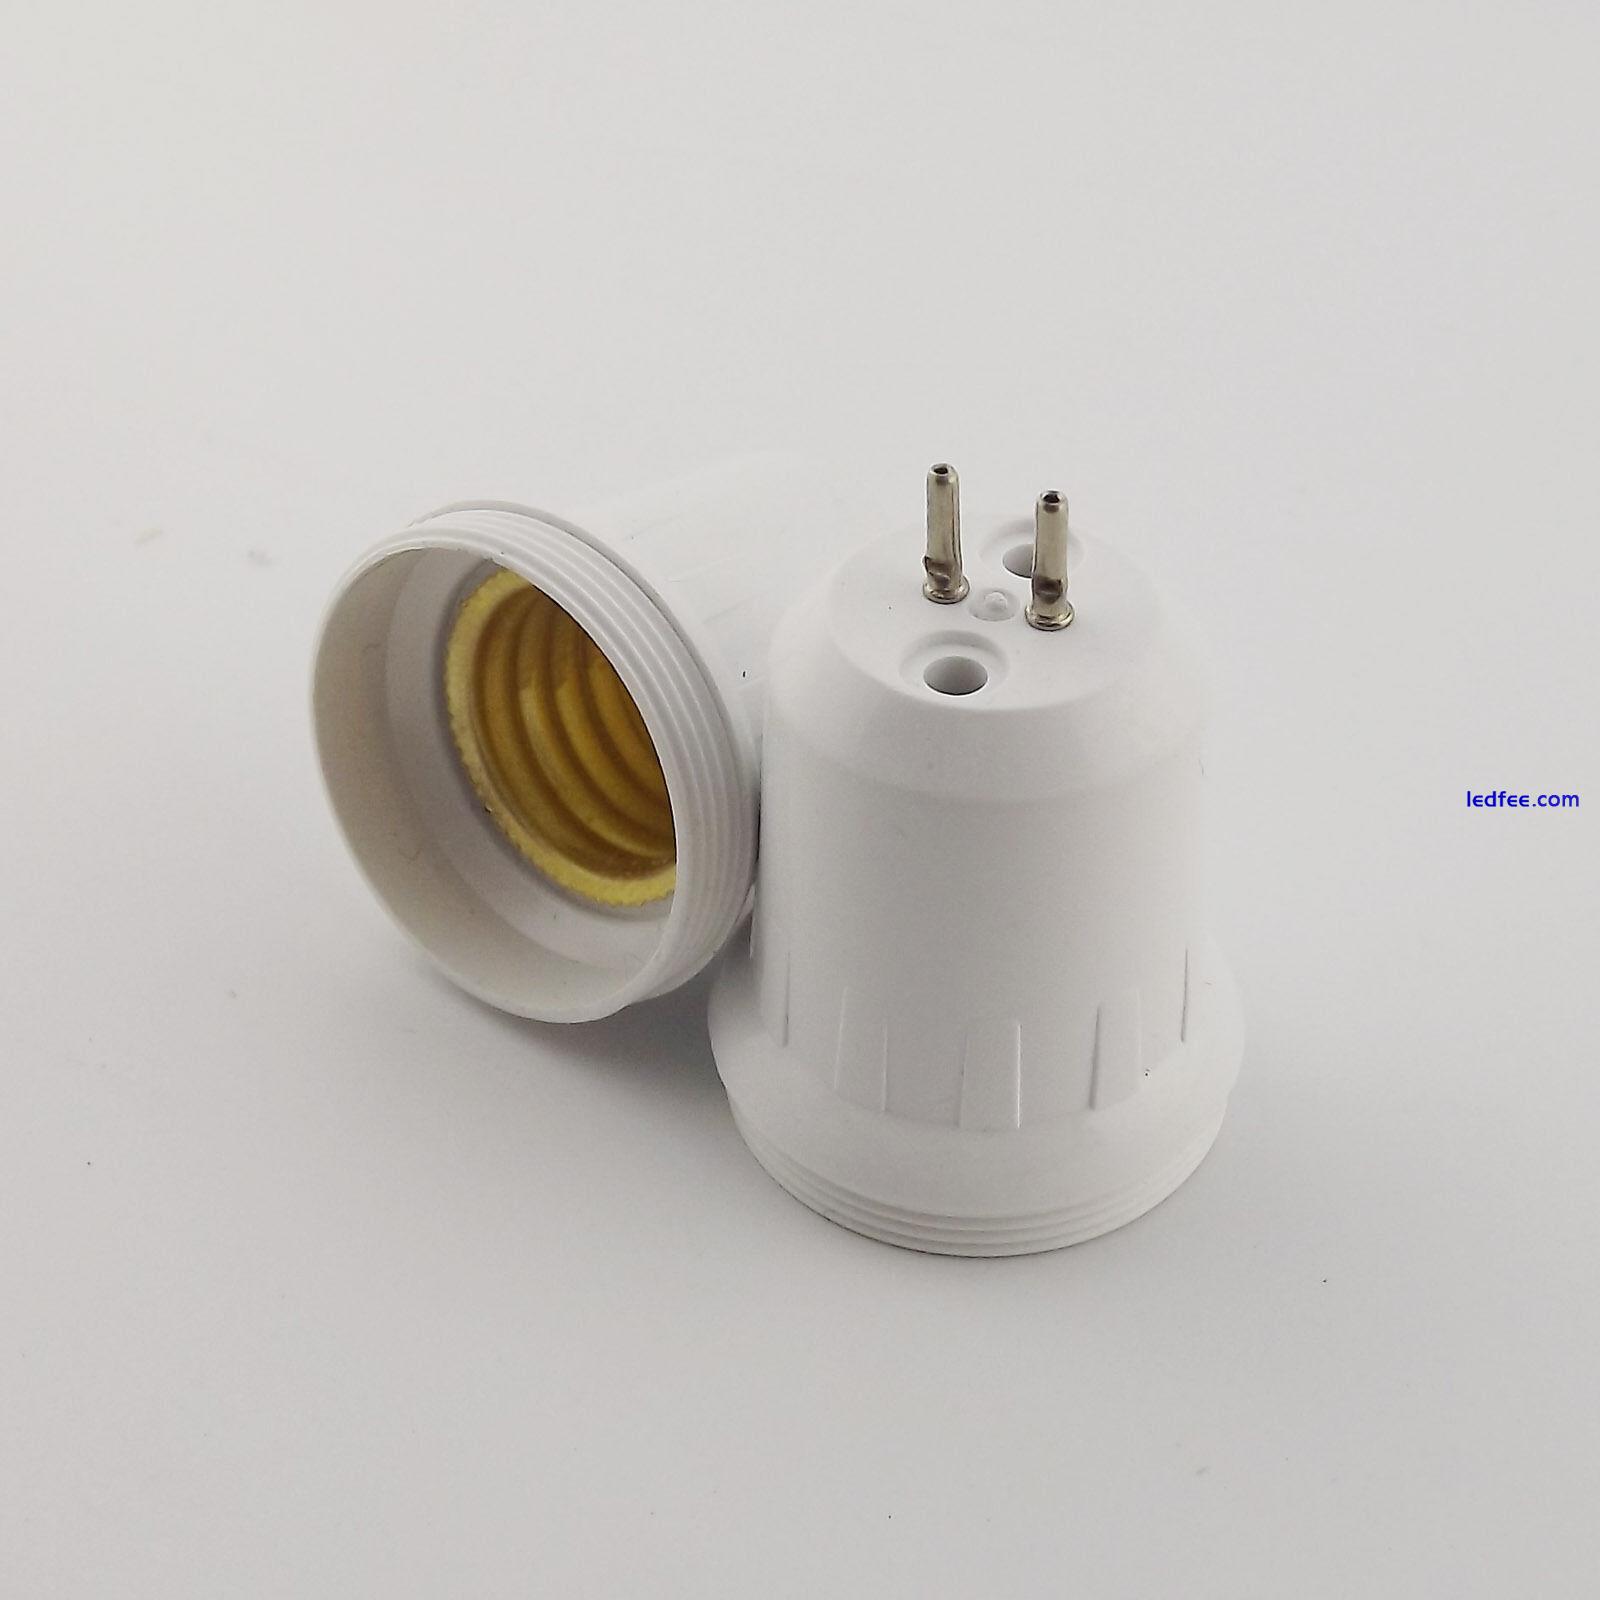 1x MR16 Lamp Socket to E17 Screw Thread LED Bulb Base Converter Adapter Holder 4 